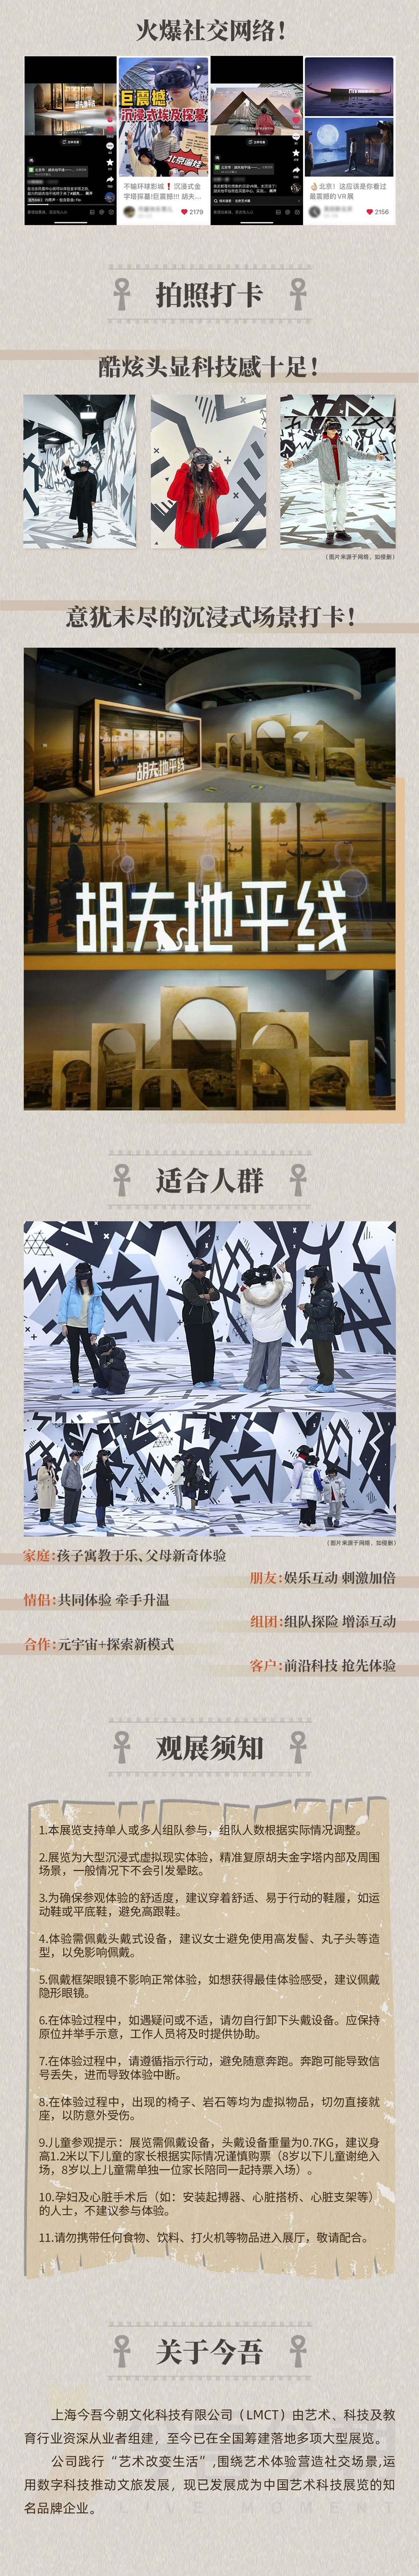 【北京站】胡夫地平线-金字塔沉浸式探索体验展